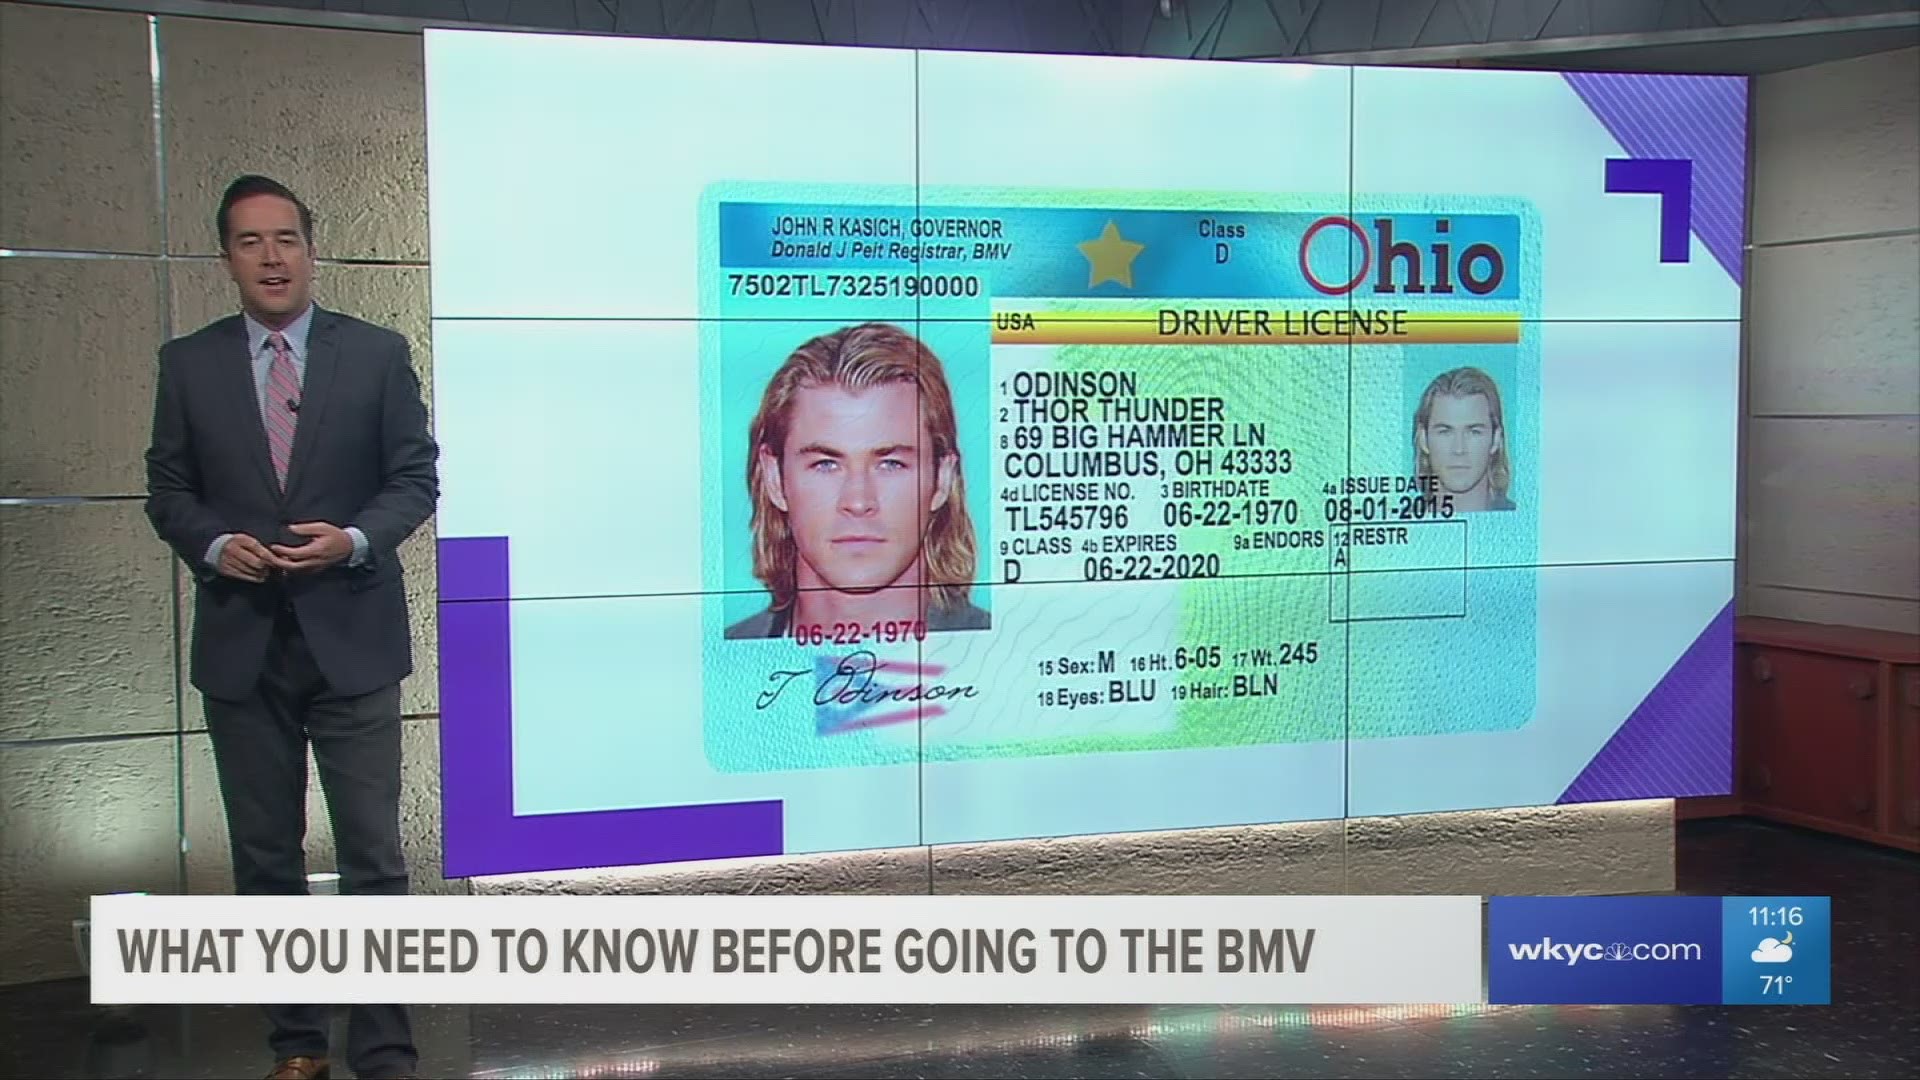 Checklist Getting the new Ohio driver's license, ID card